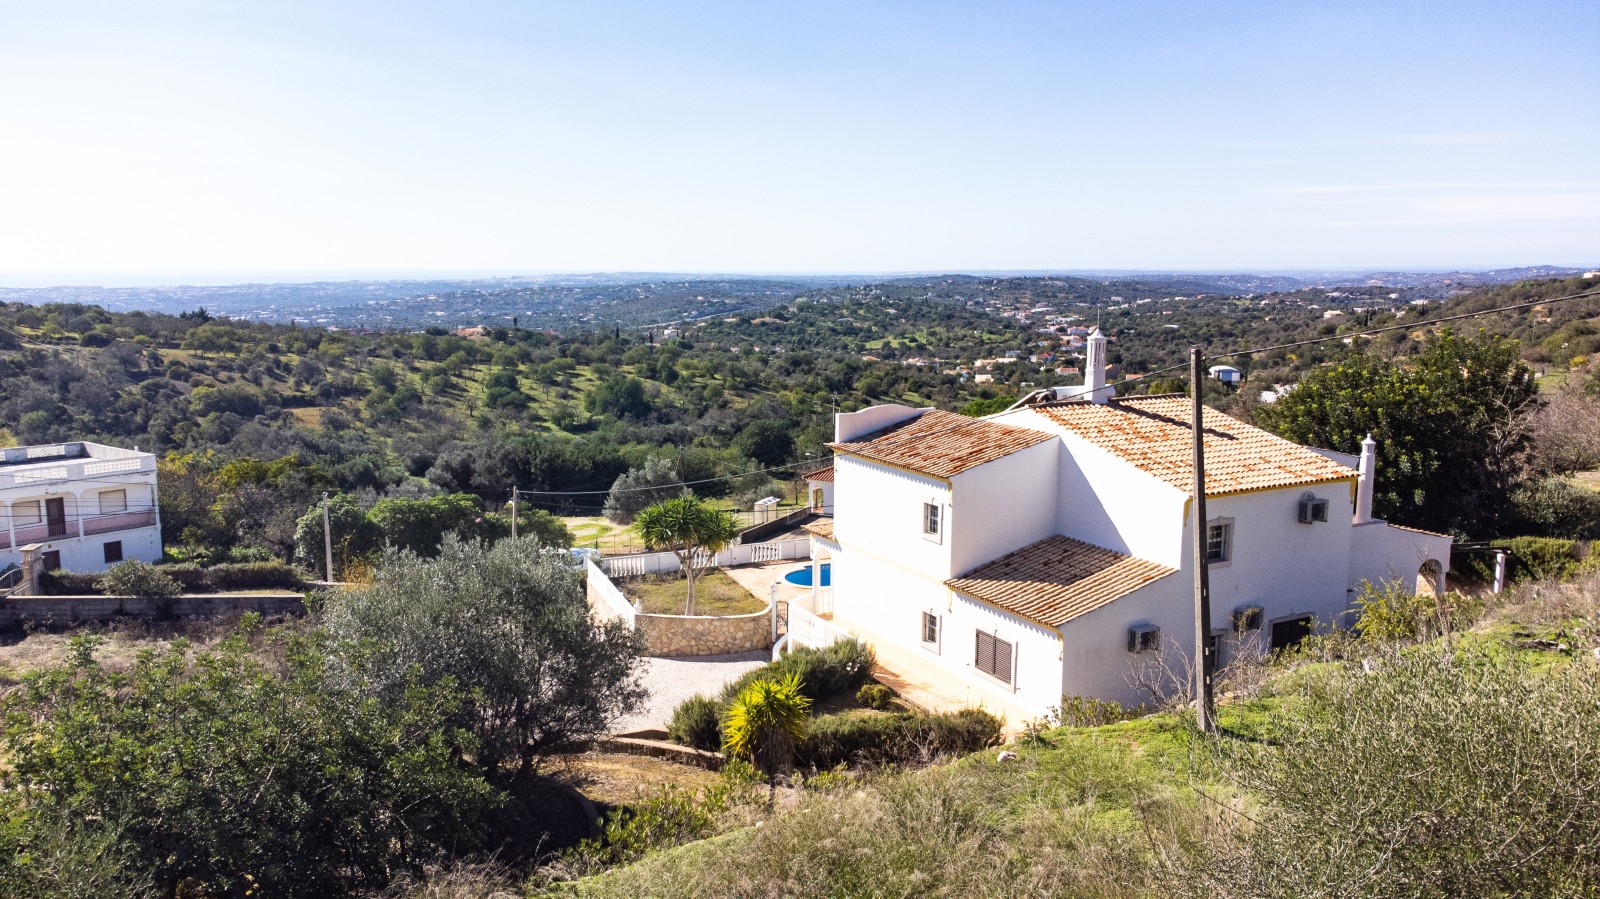 Moradia V4, e terreno, para venda, em Boliqueime, Loulé, Algarve_245318